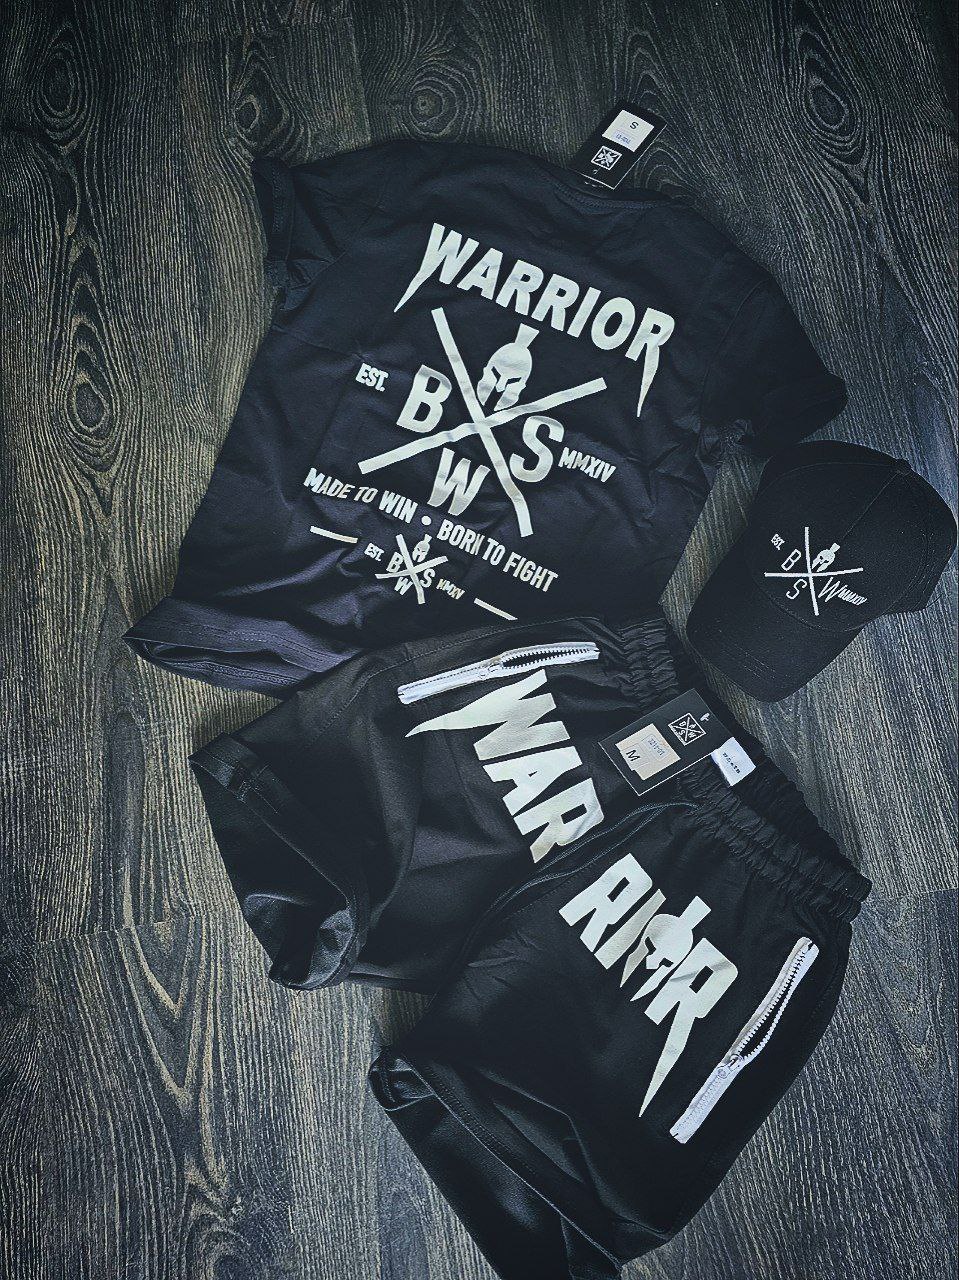 Спортивный комплект воин футболка плюс шорты воин B.S.W - Фото 2